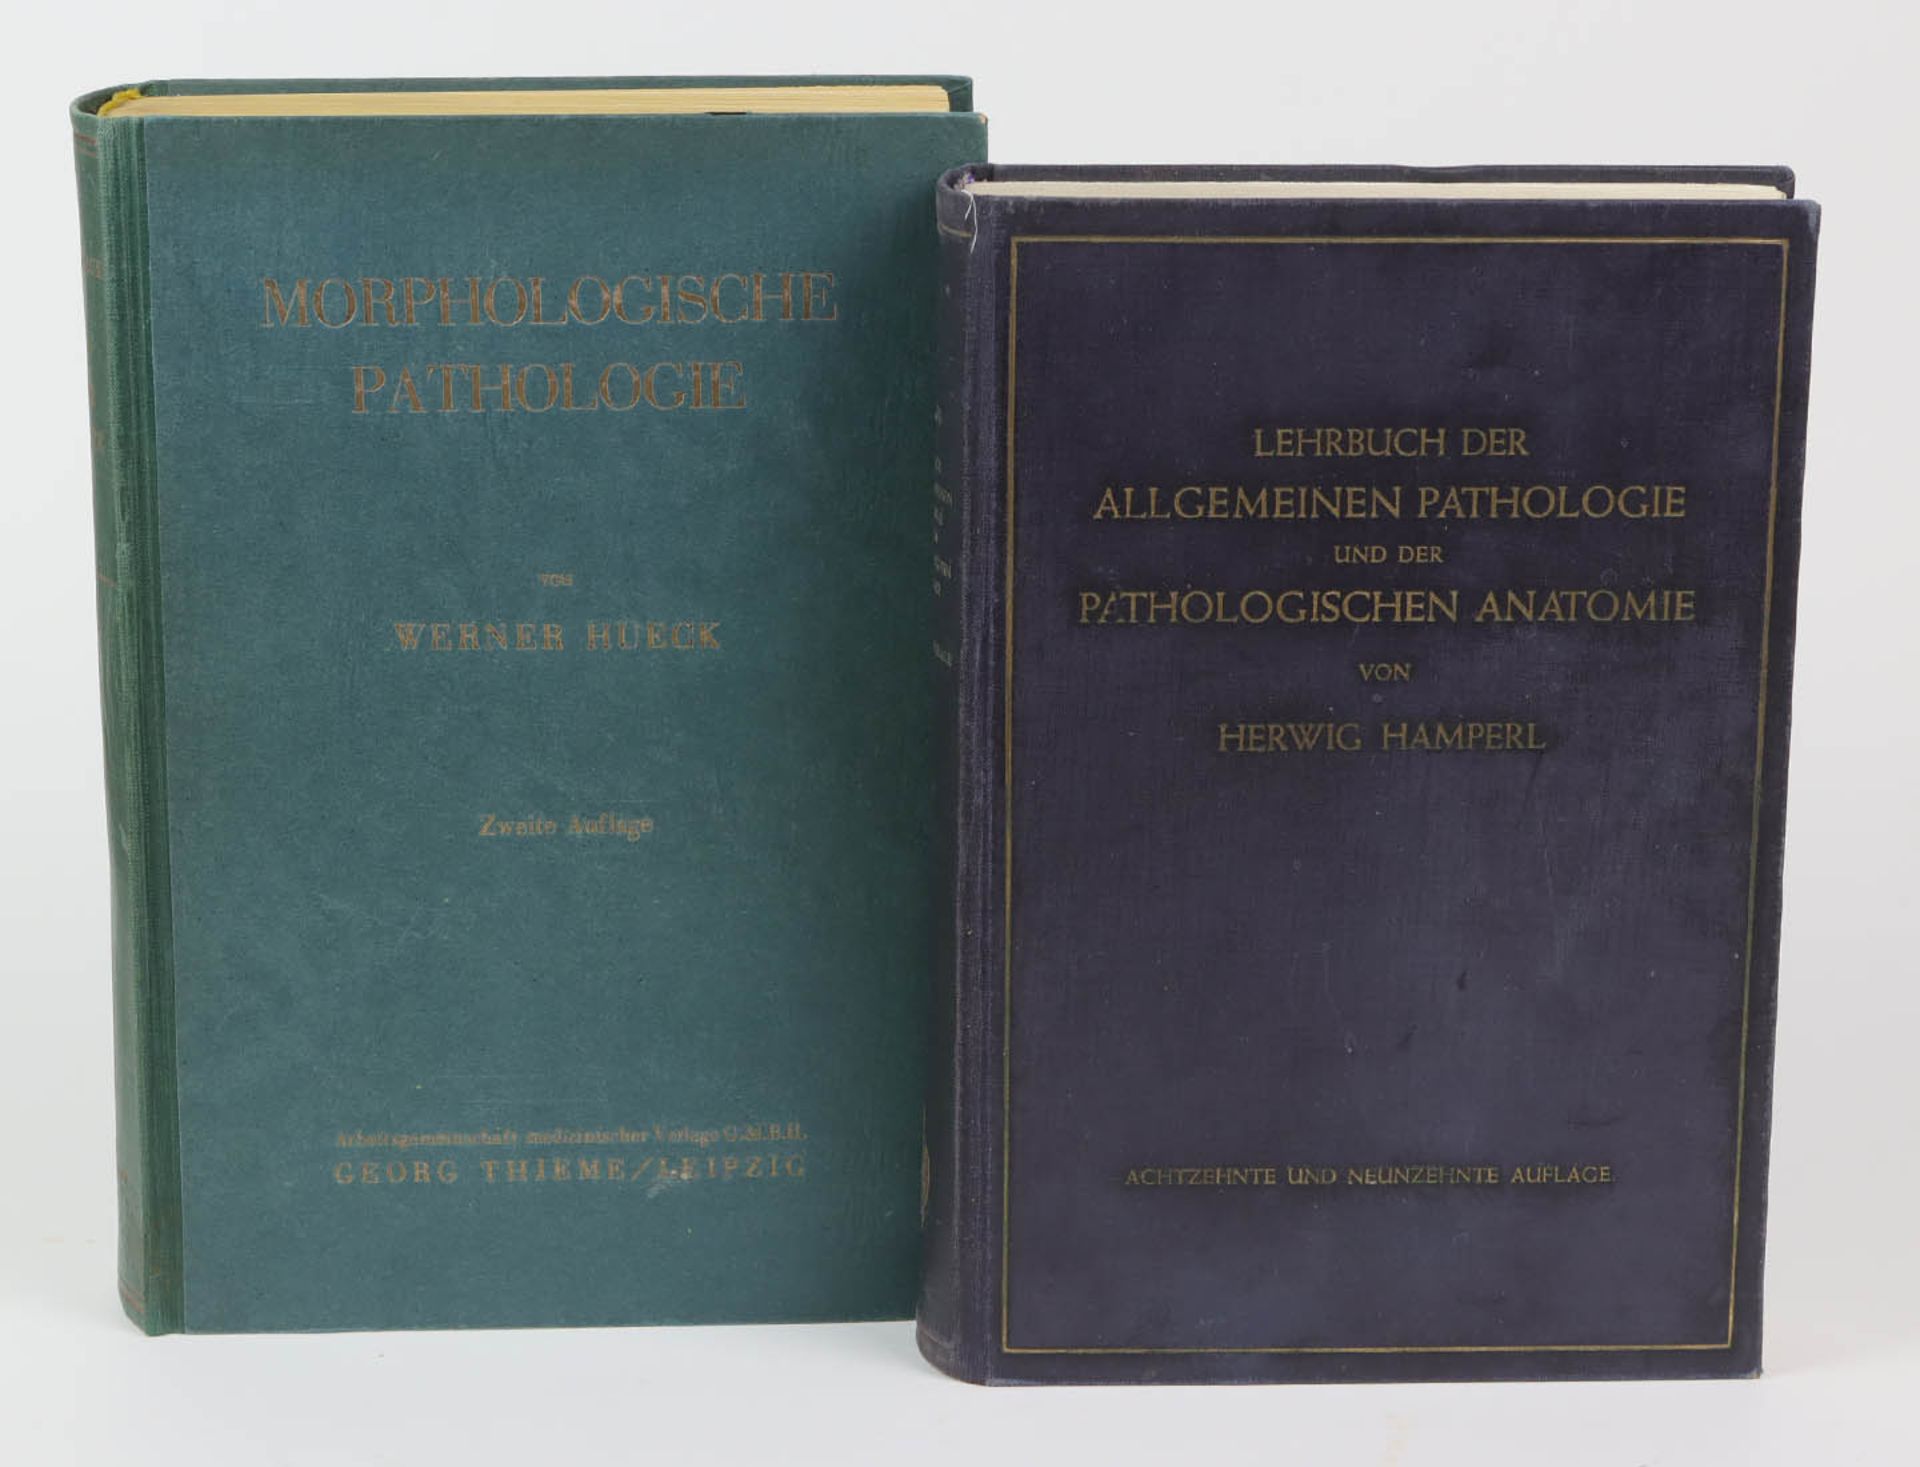 2 Bände Pathologie*Morphologische Pathologie* von Prof. Dr. Werner Hueck, Georg Thieme Verlag